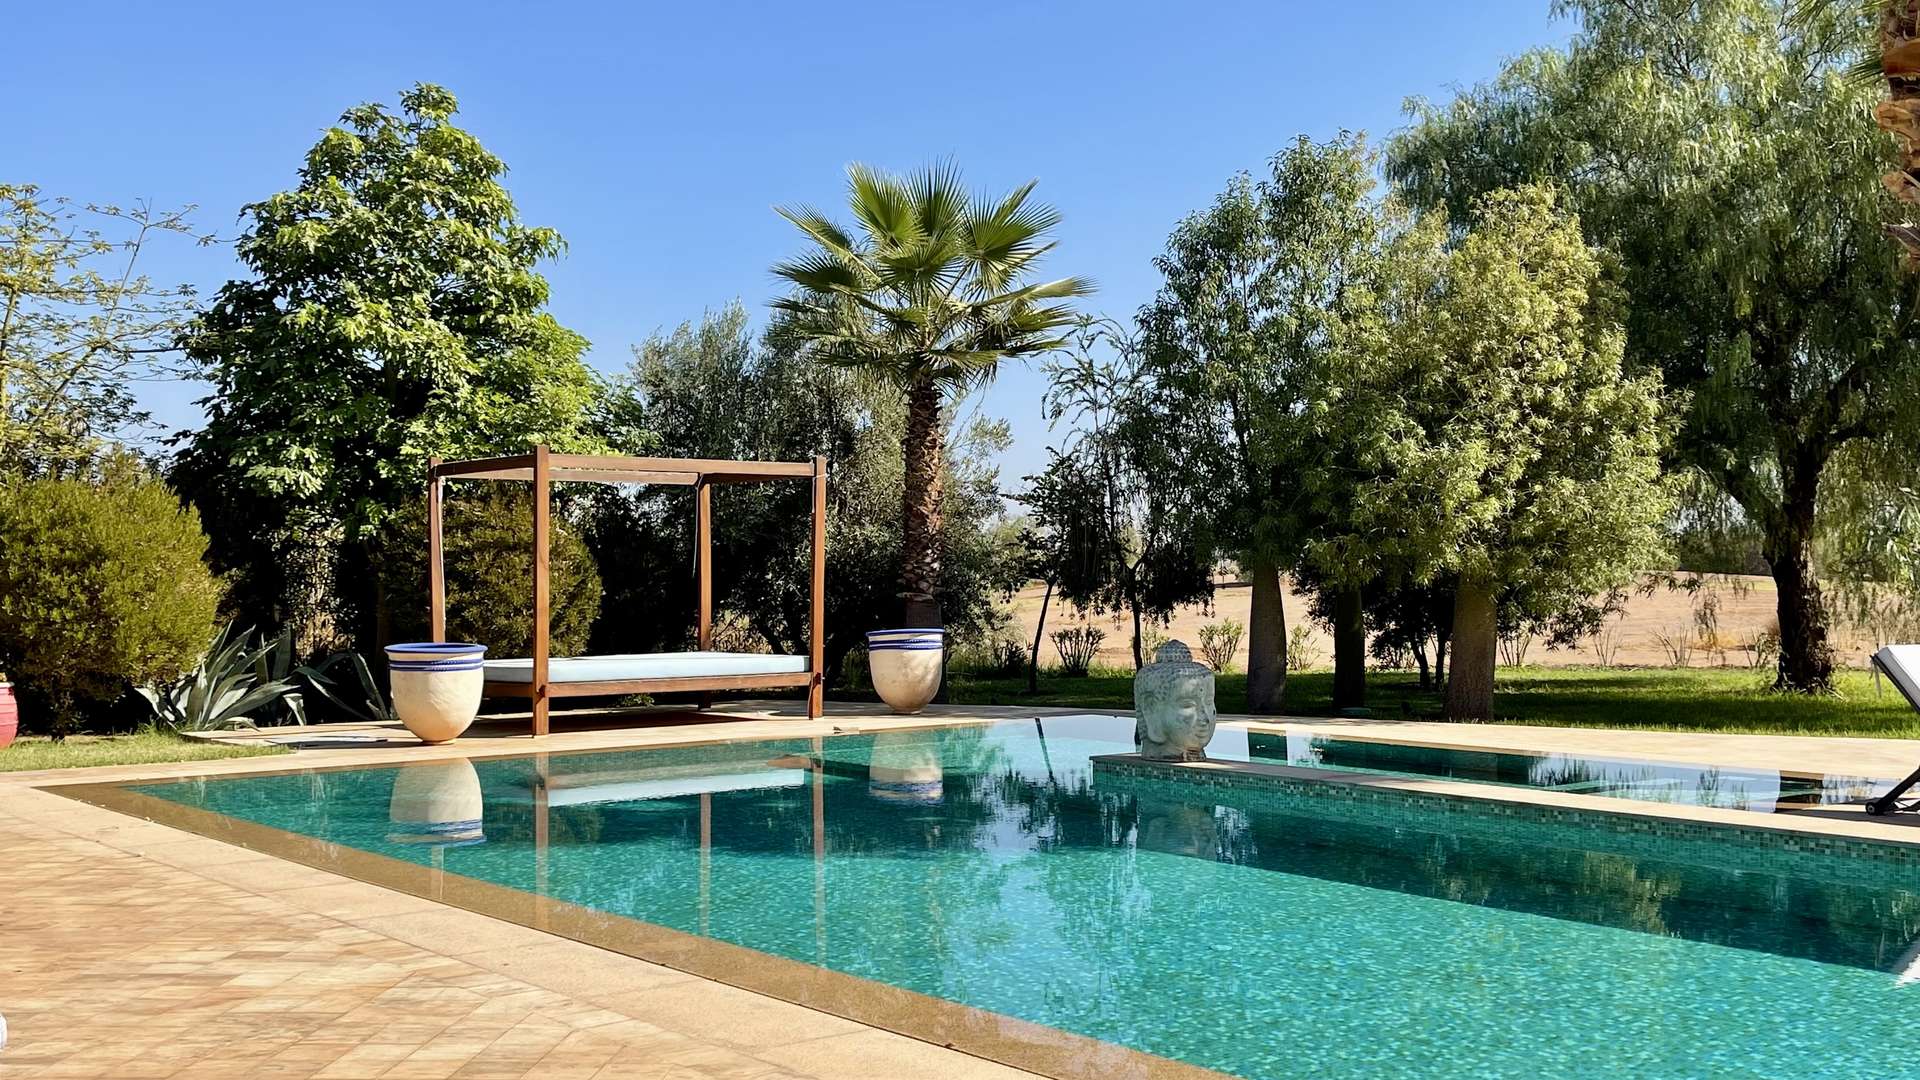 Location de vacances,Villa,Villa front de Golf avenue Mohamed VI Marrakech: Villa de luxe bien décorée et aménagée 4 suites avec services,Marrakech,Golf Prestigia